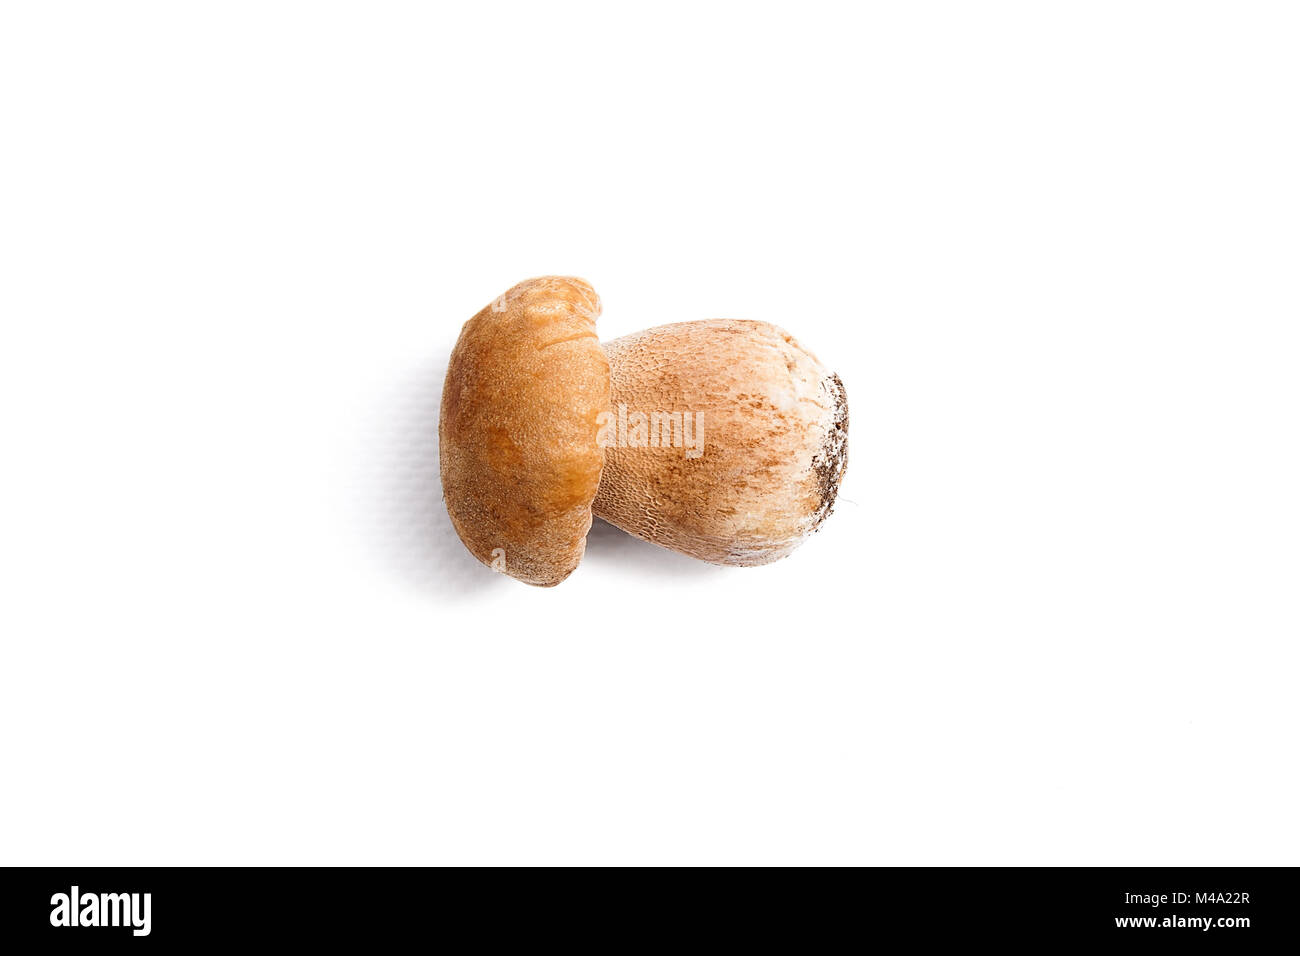 Récolté à l'automne étonnant champignon comestible boletus edulis (cèpes) connu sous le nom de champignons porcini isolé sur fond blanc. Banque D'Images